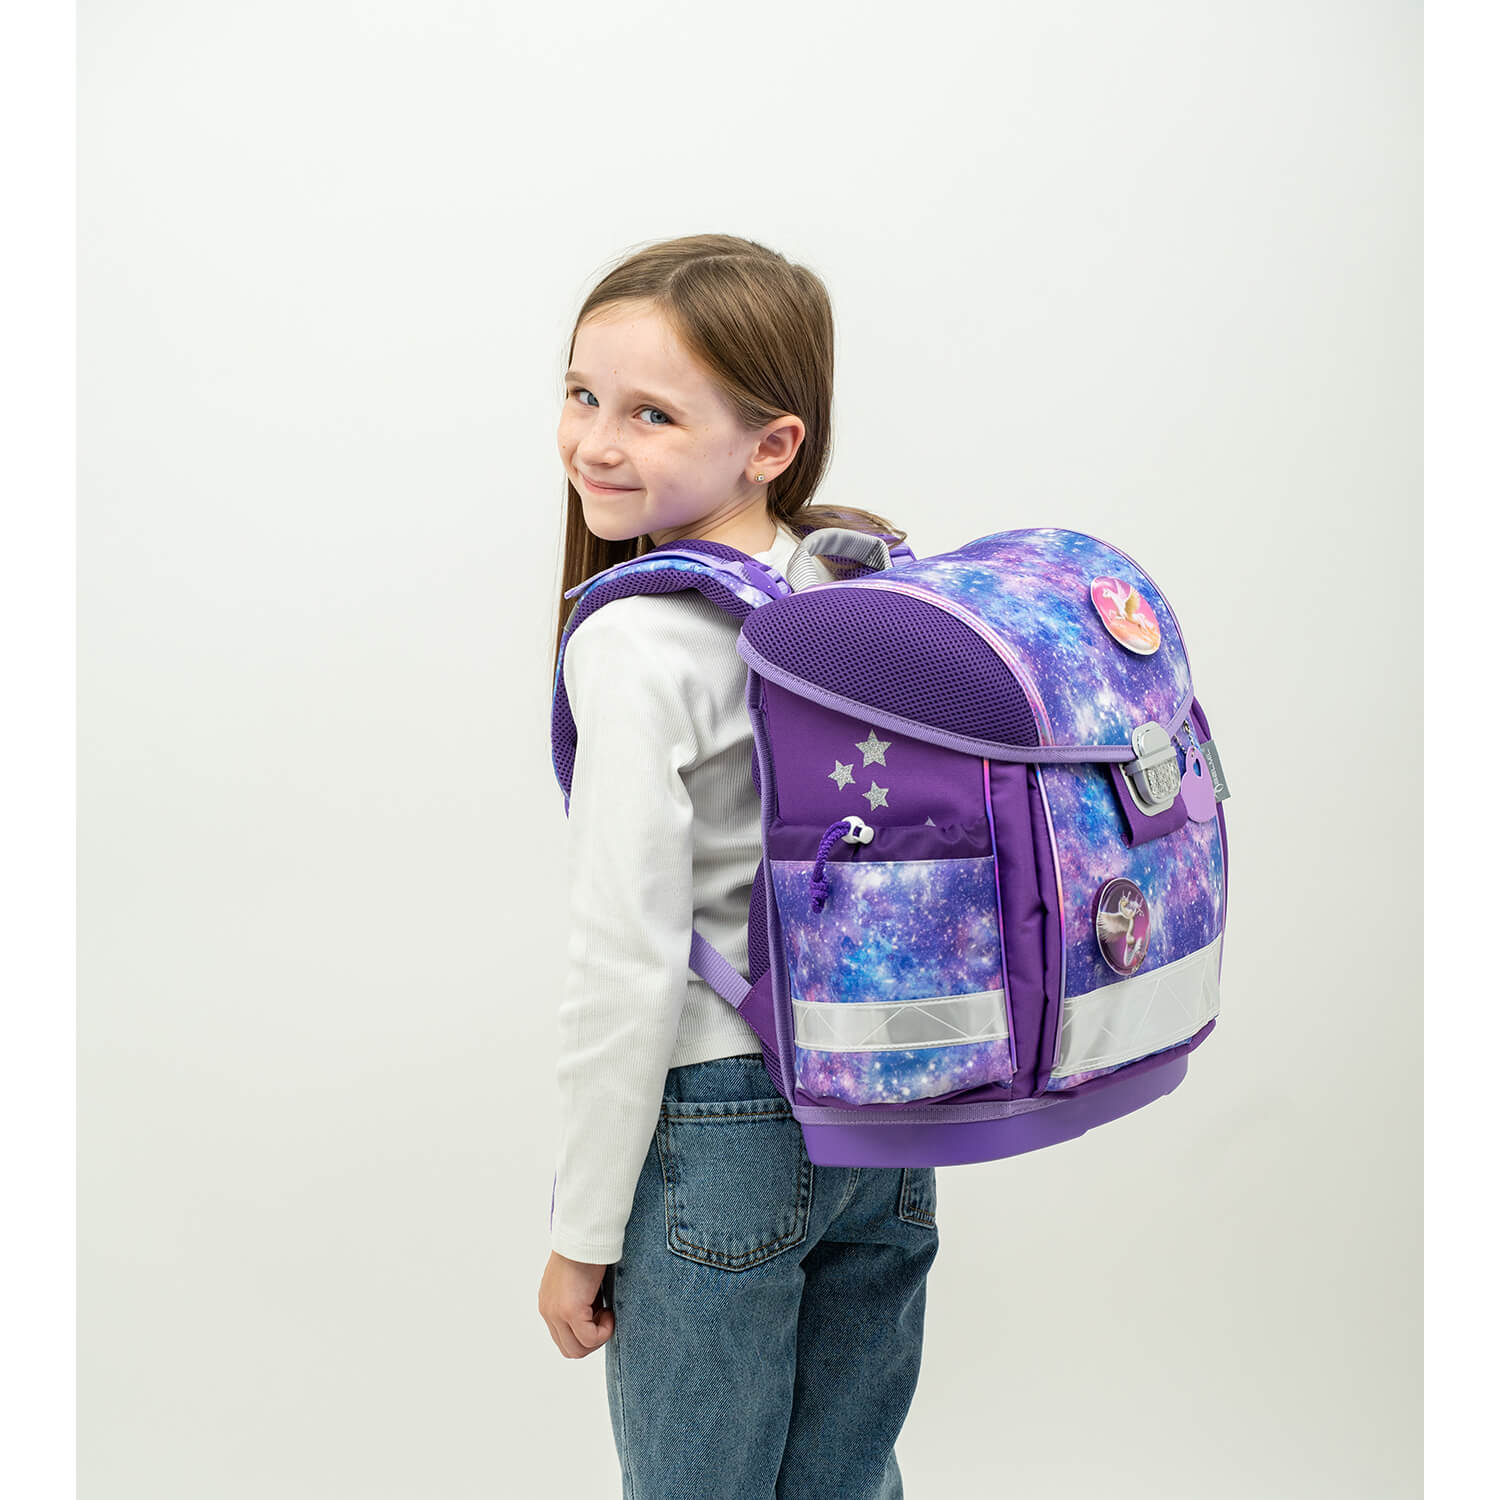 Classy Violet Universe schoolbag set 6 pcs with GRATIS Patch set